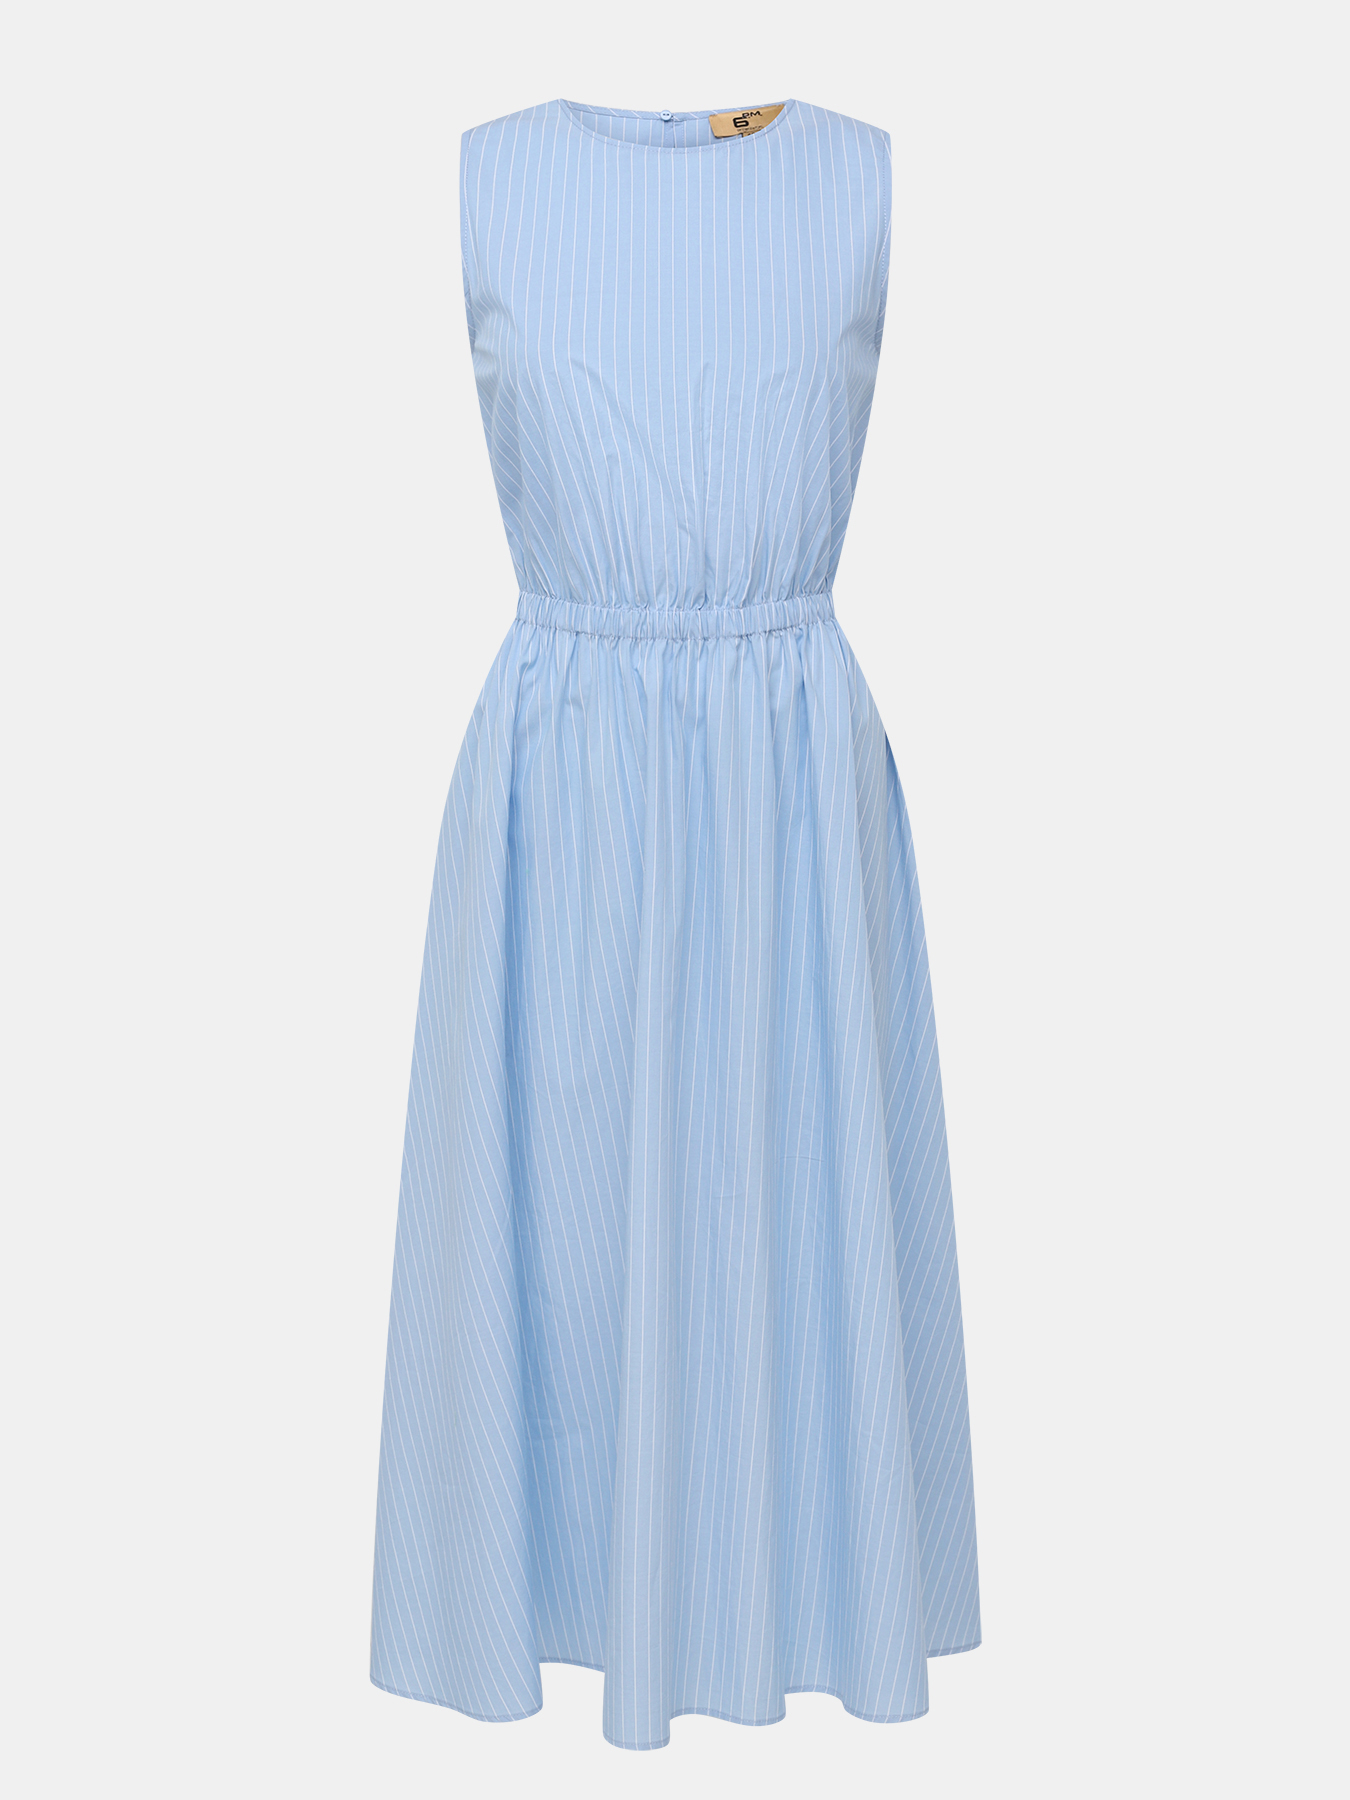 Платье женское 6 P.M. 447901 голубое 46 RU